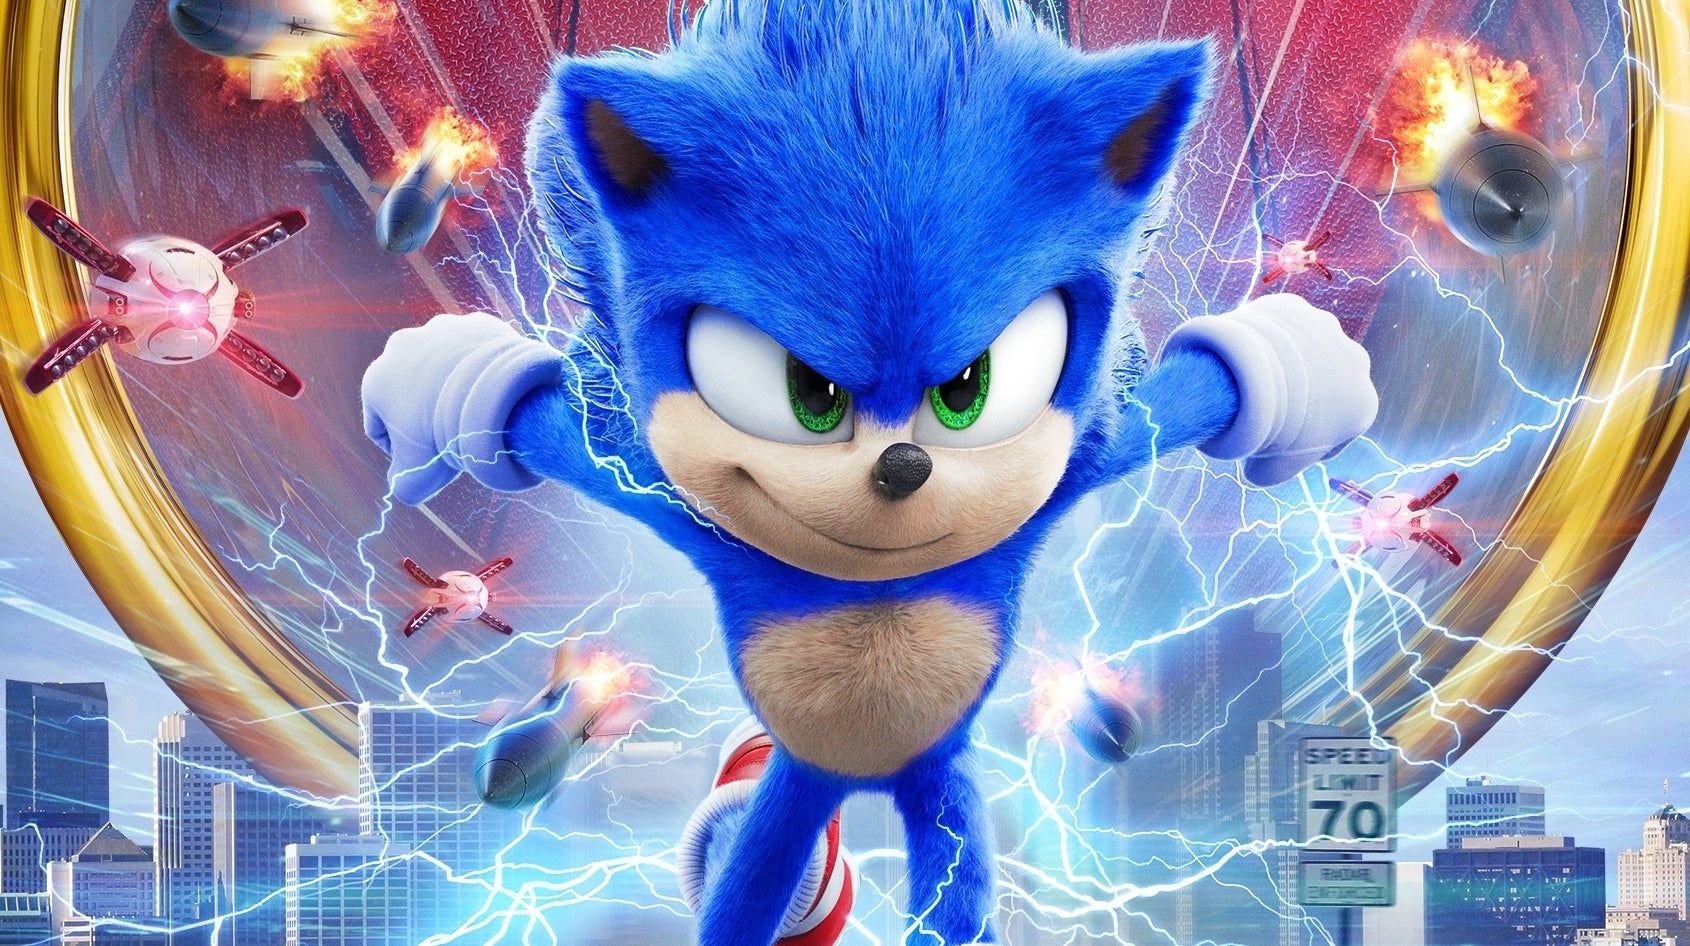 Afbeeldingen van Sonic the Hedgehog 3 film release bekend